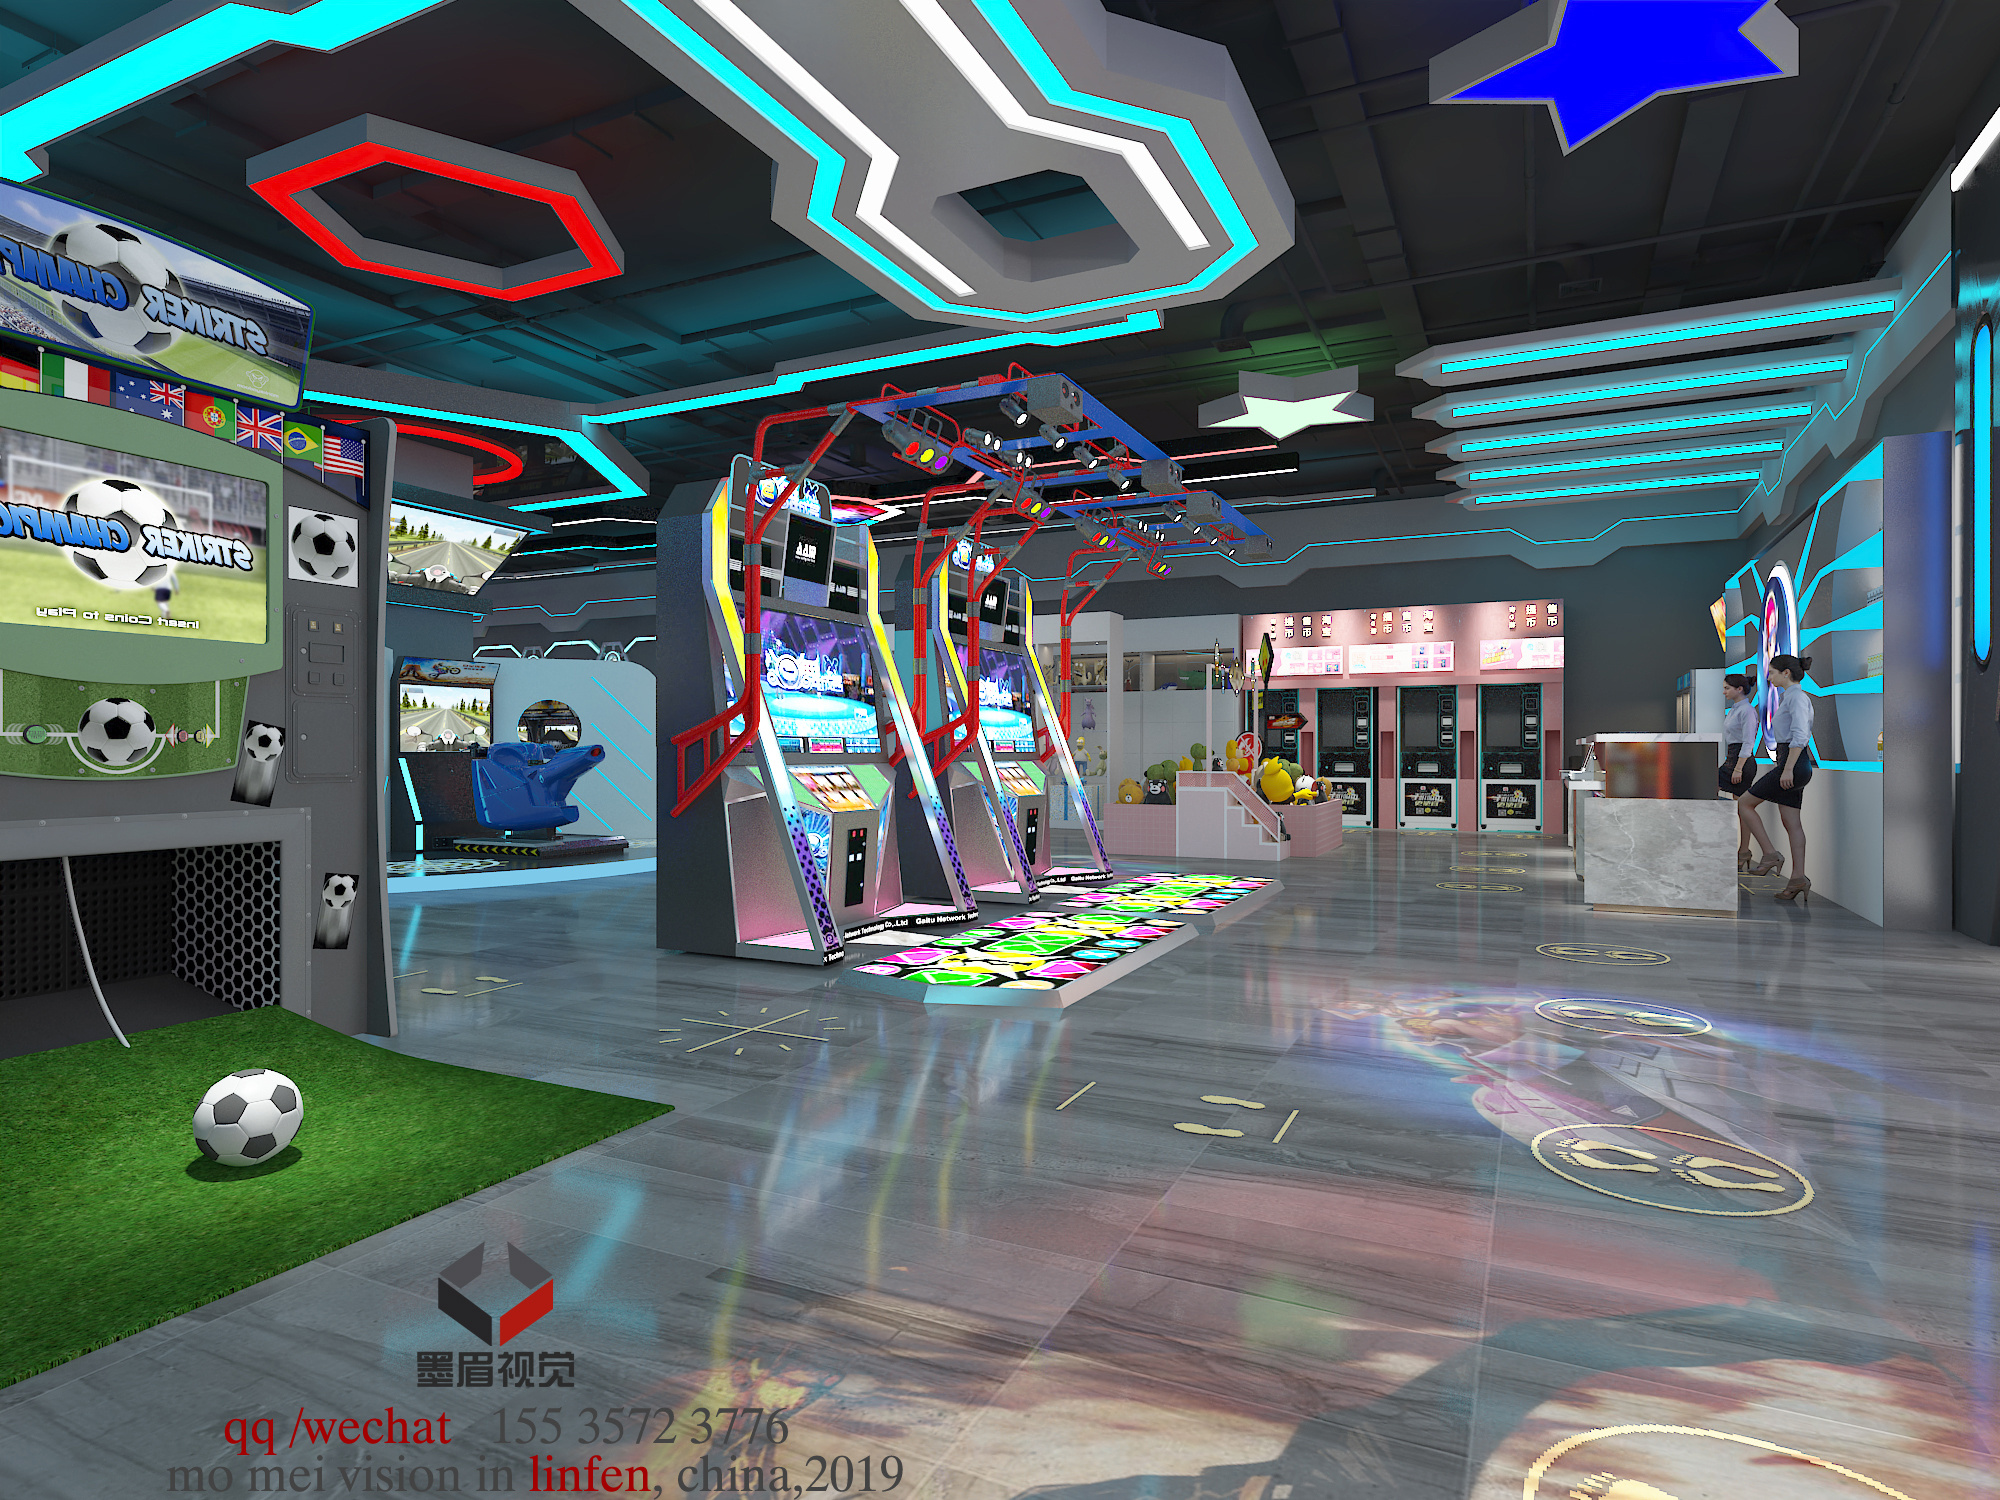 b-1电子娱乐竞技厅电玩城游戏厅乐高墙面 (1)3d模型下载-【集简空间】「每日更新」